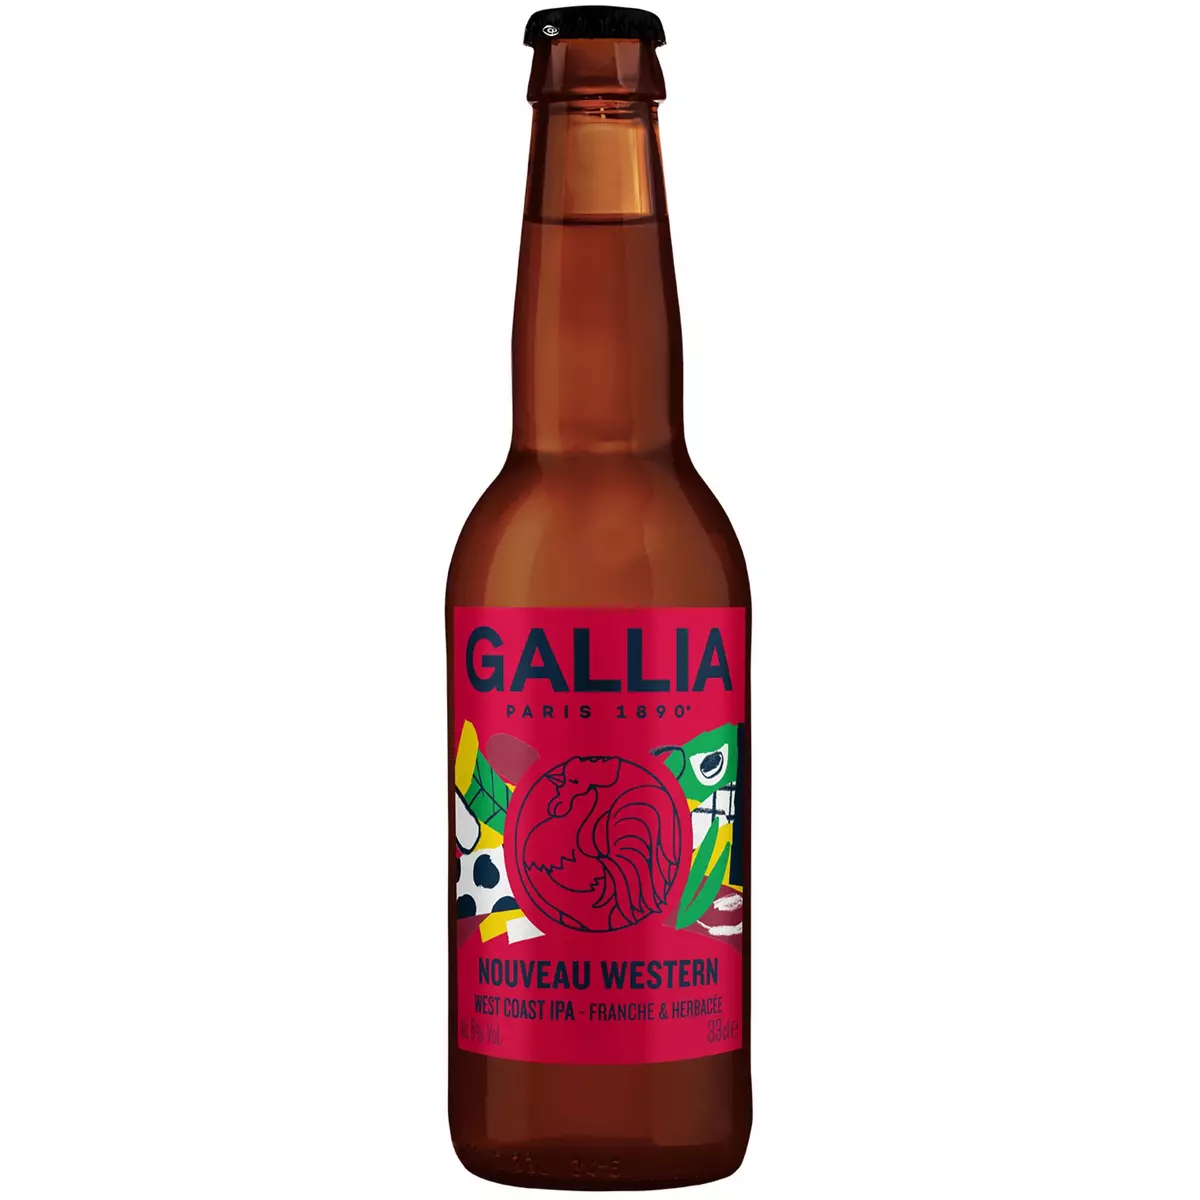 GALLIA Bière blonde India Pale Ale 6% bouteille 33cl